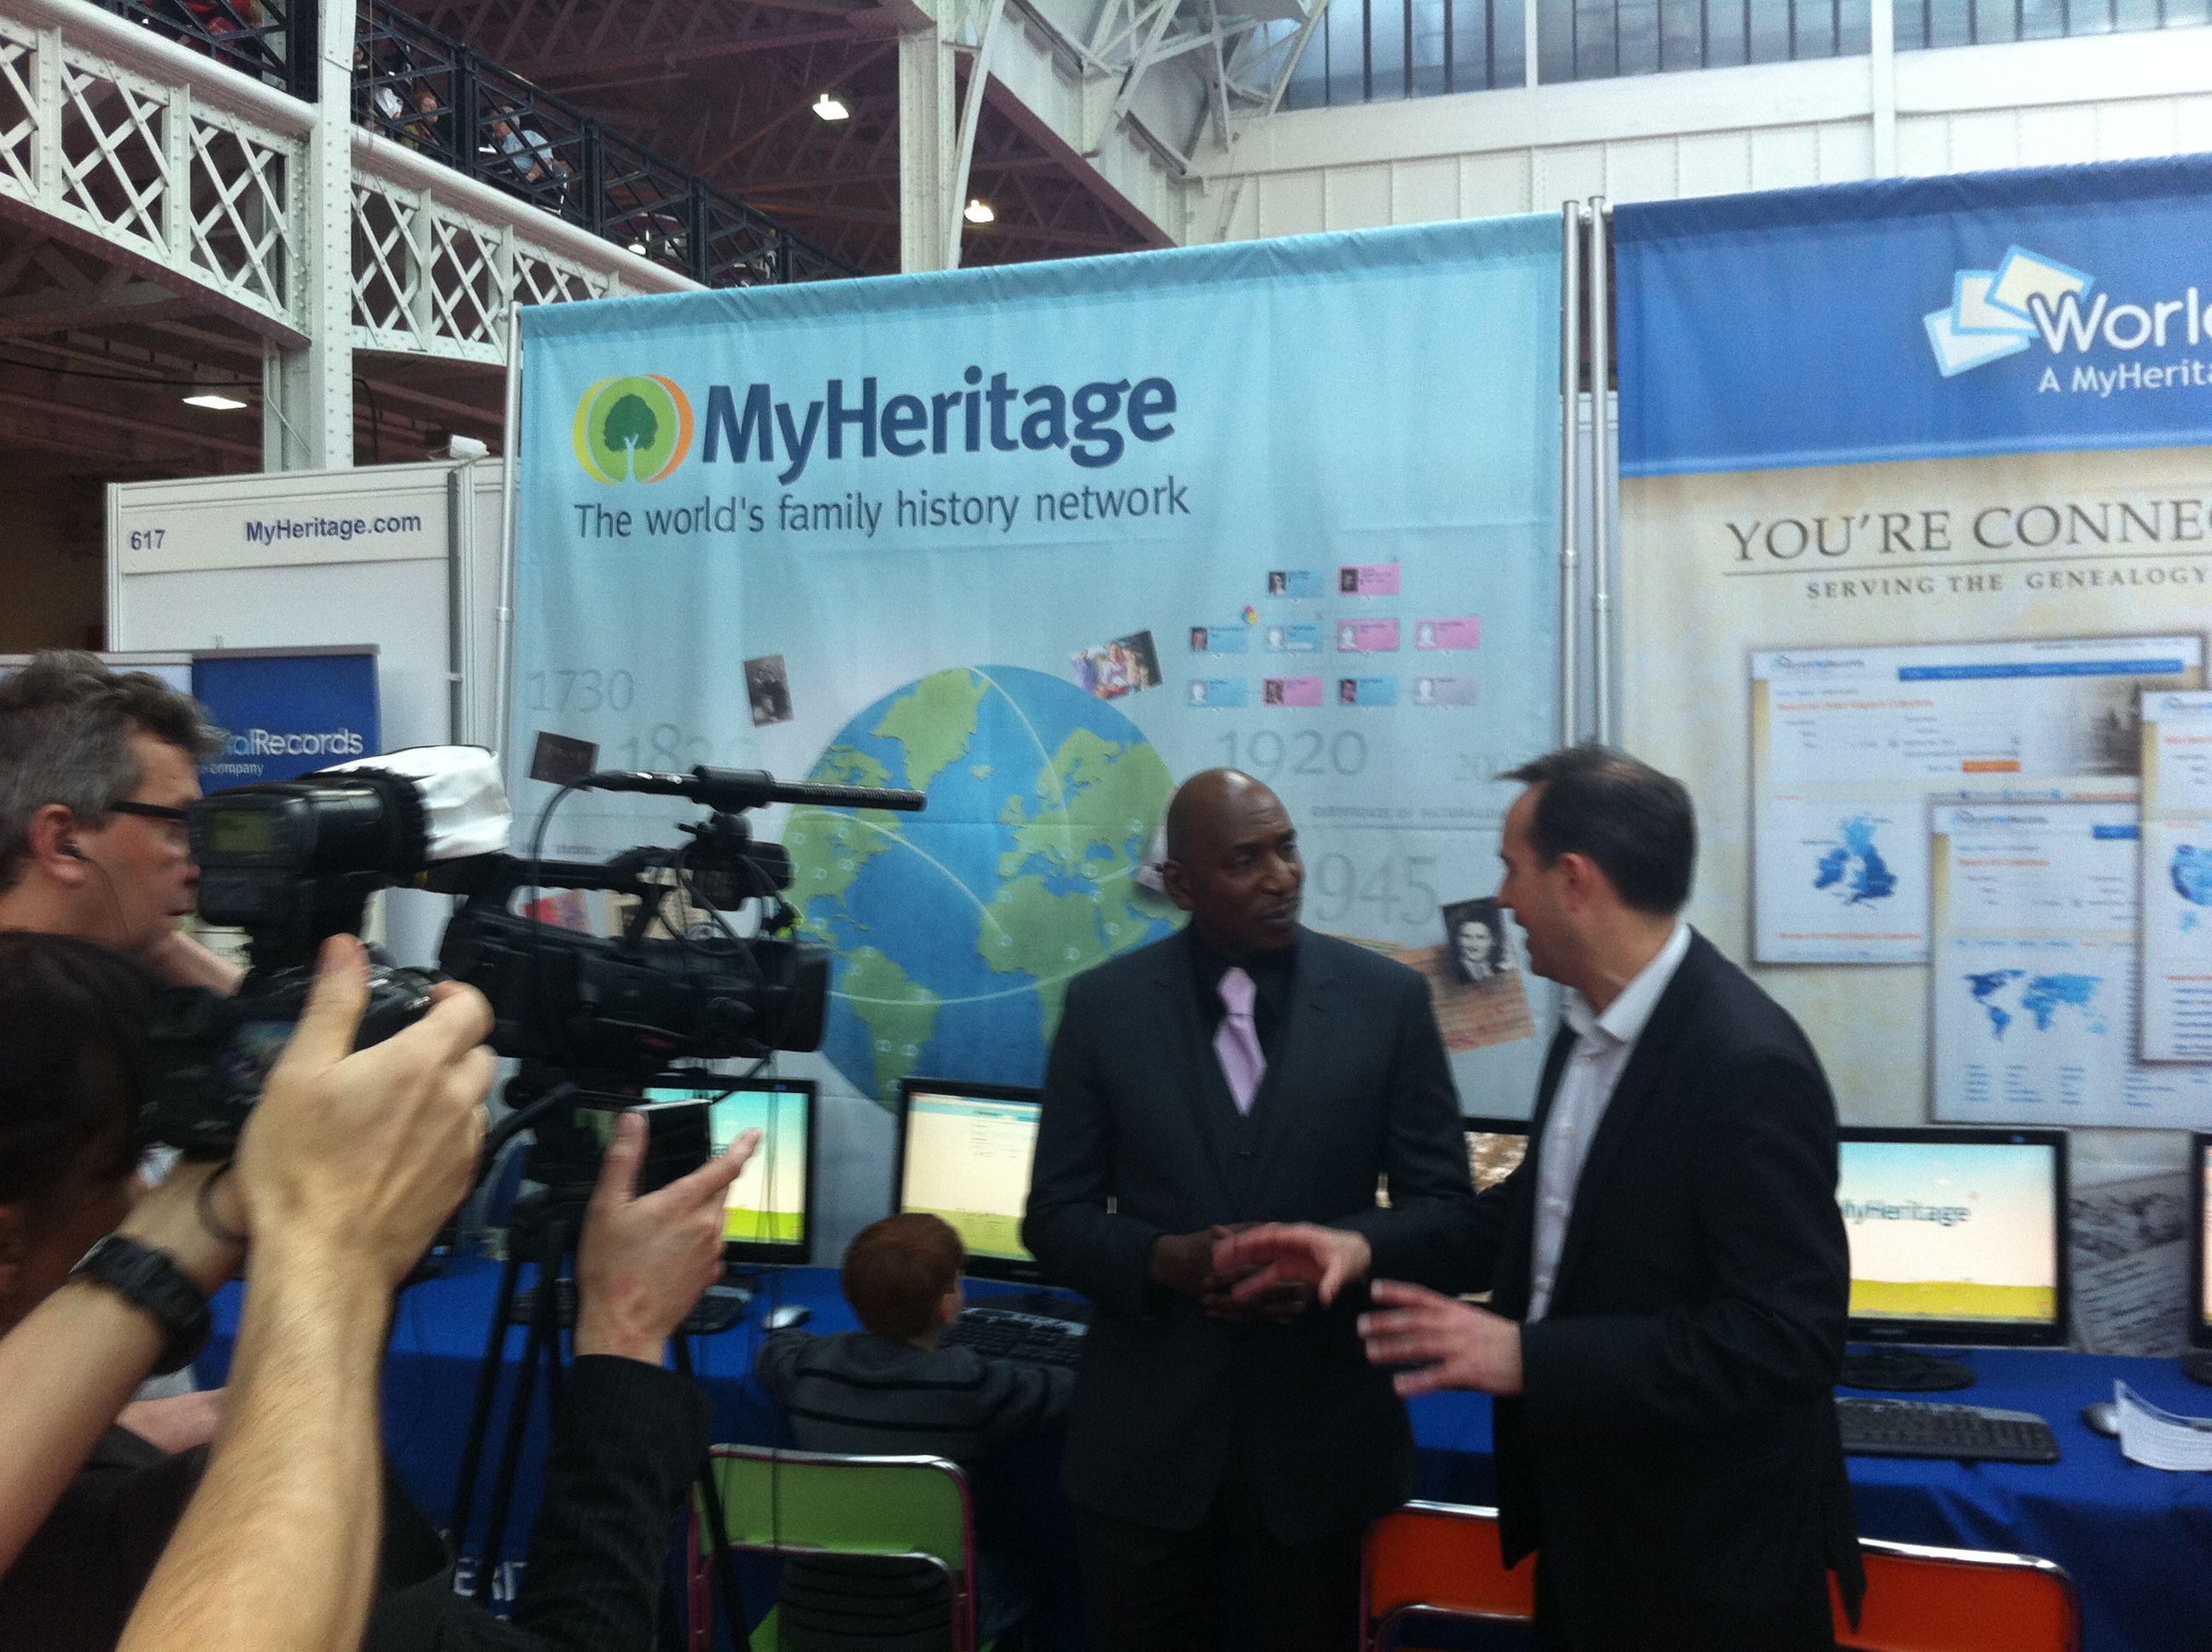 Colin McFarlane (à gauche) et Dr. Nick Barratt parle pour la télé du Projet pour les Ecoles 'Making History' réalisé avec MyHeritage.com